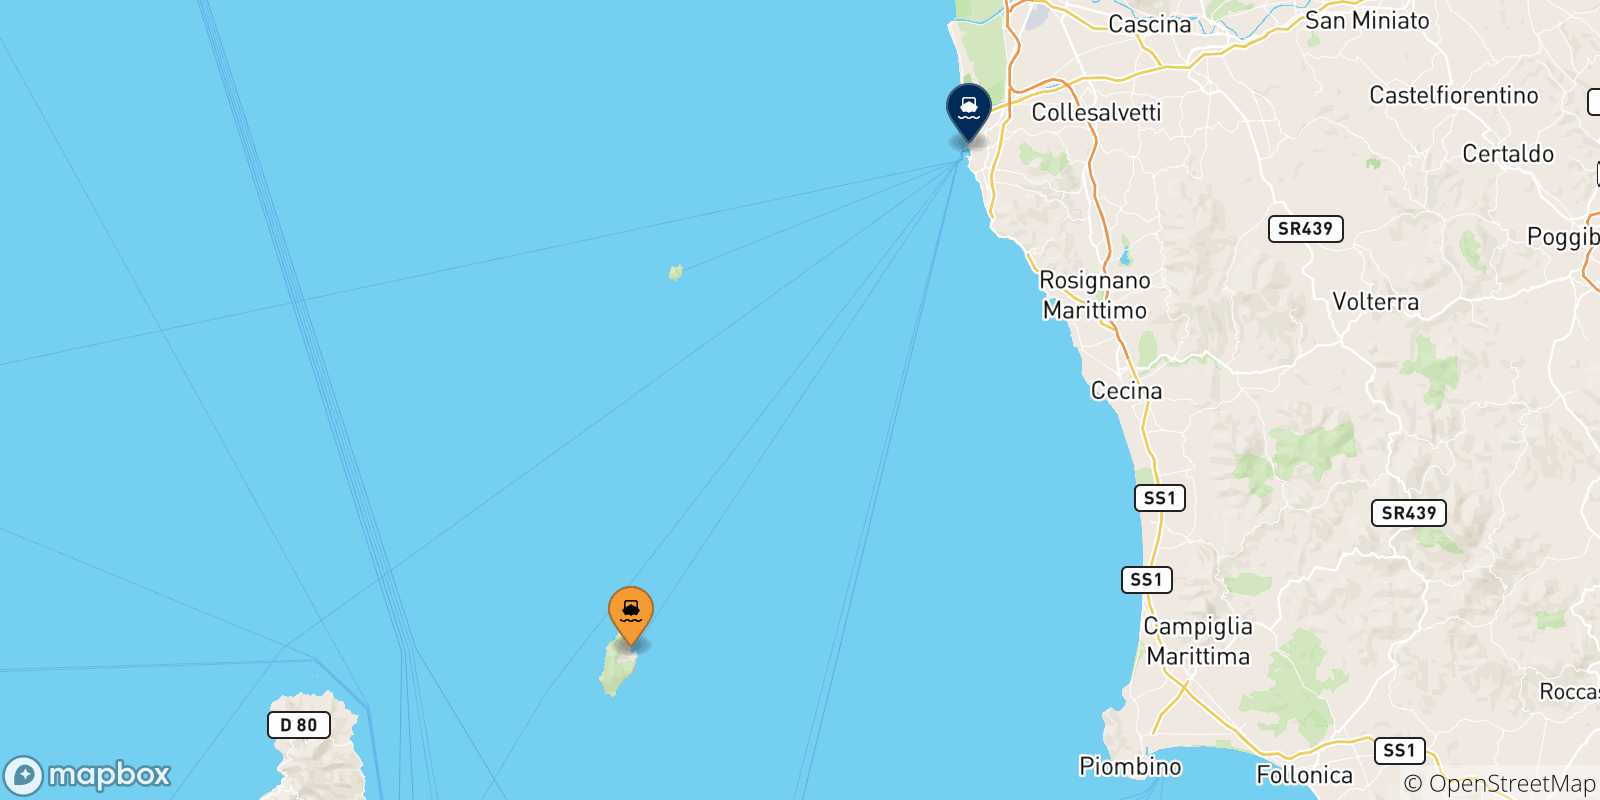 Mappa delle possibili rotte tra l'Isola Di Capraia e l'Italia